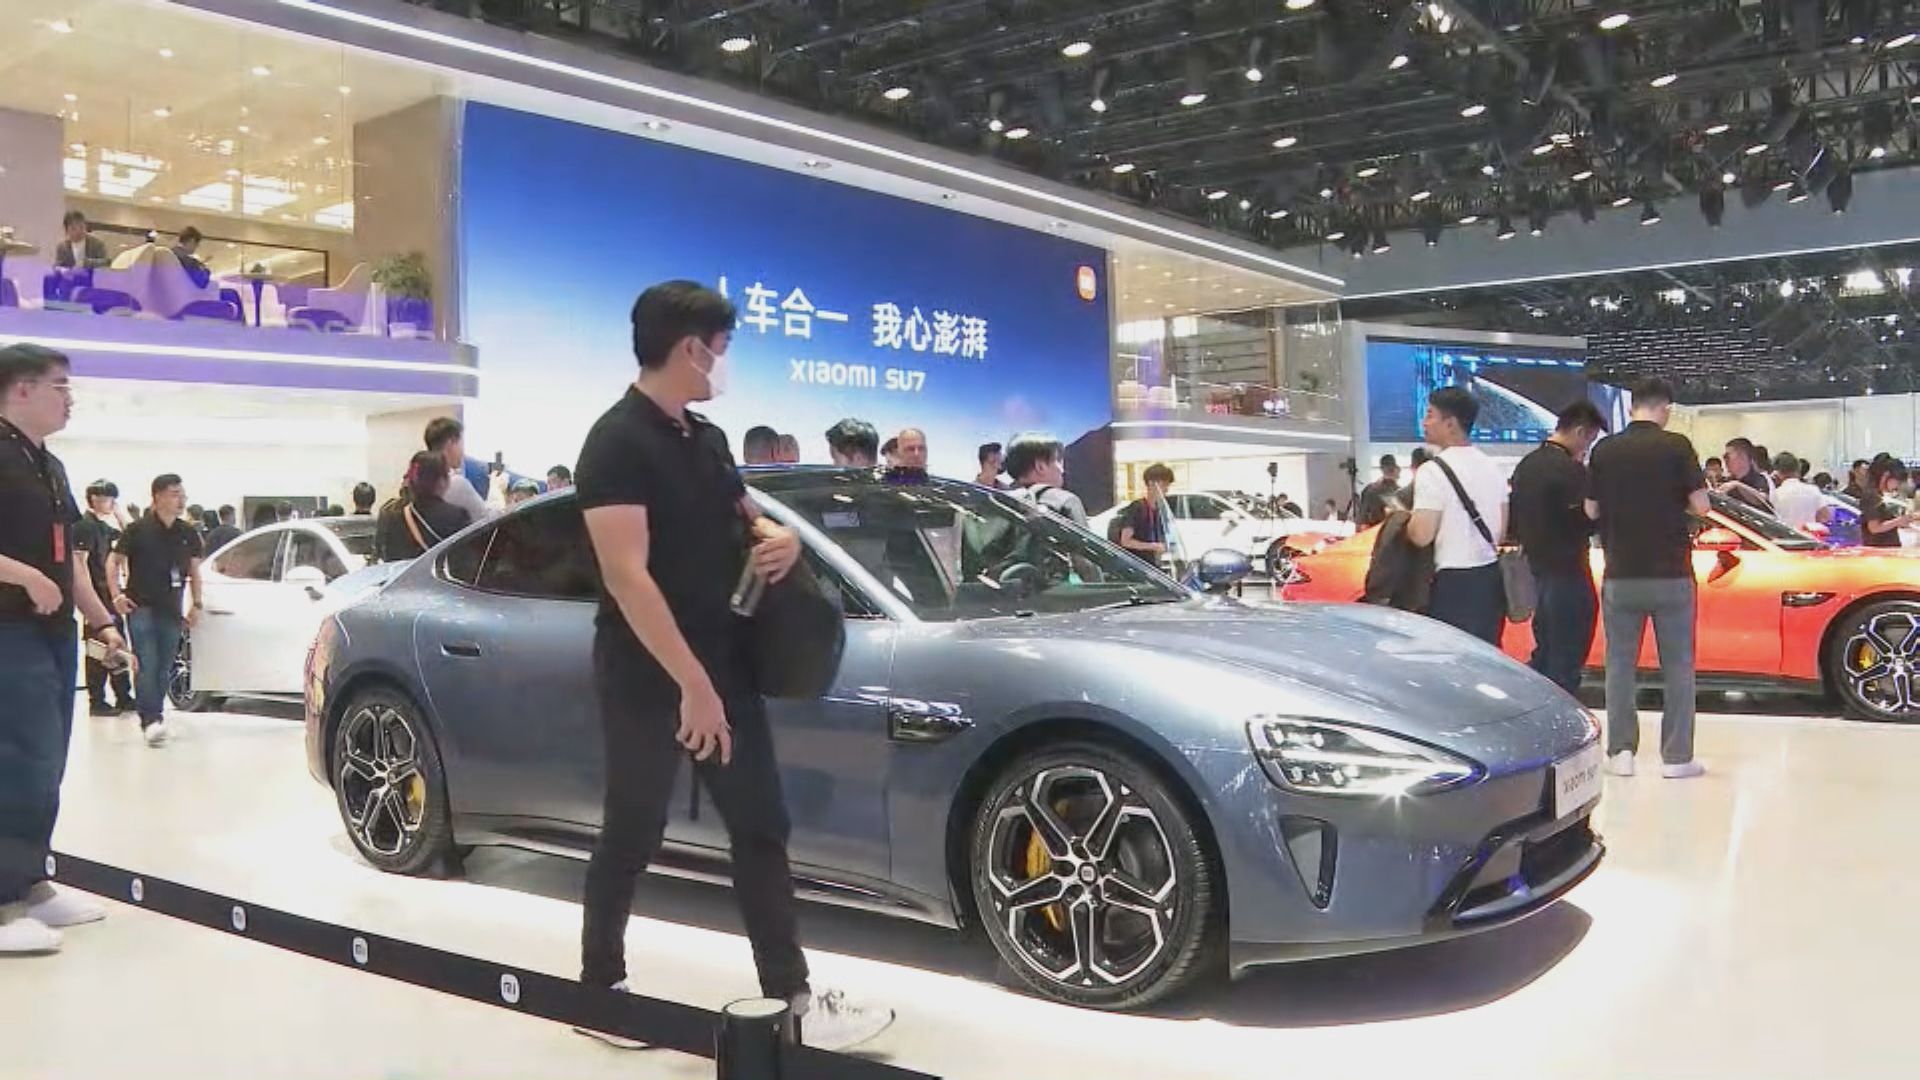 北京車展新能源汽車成焦點 小米指會提升產能